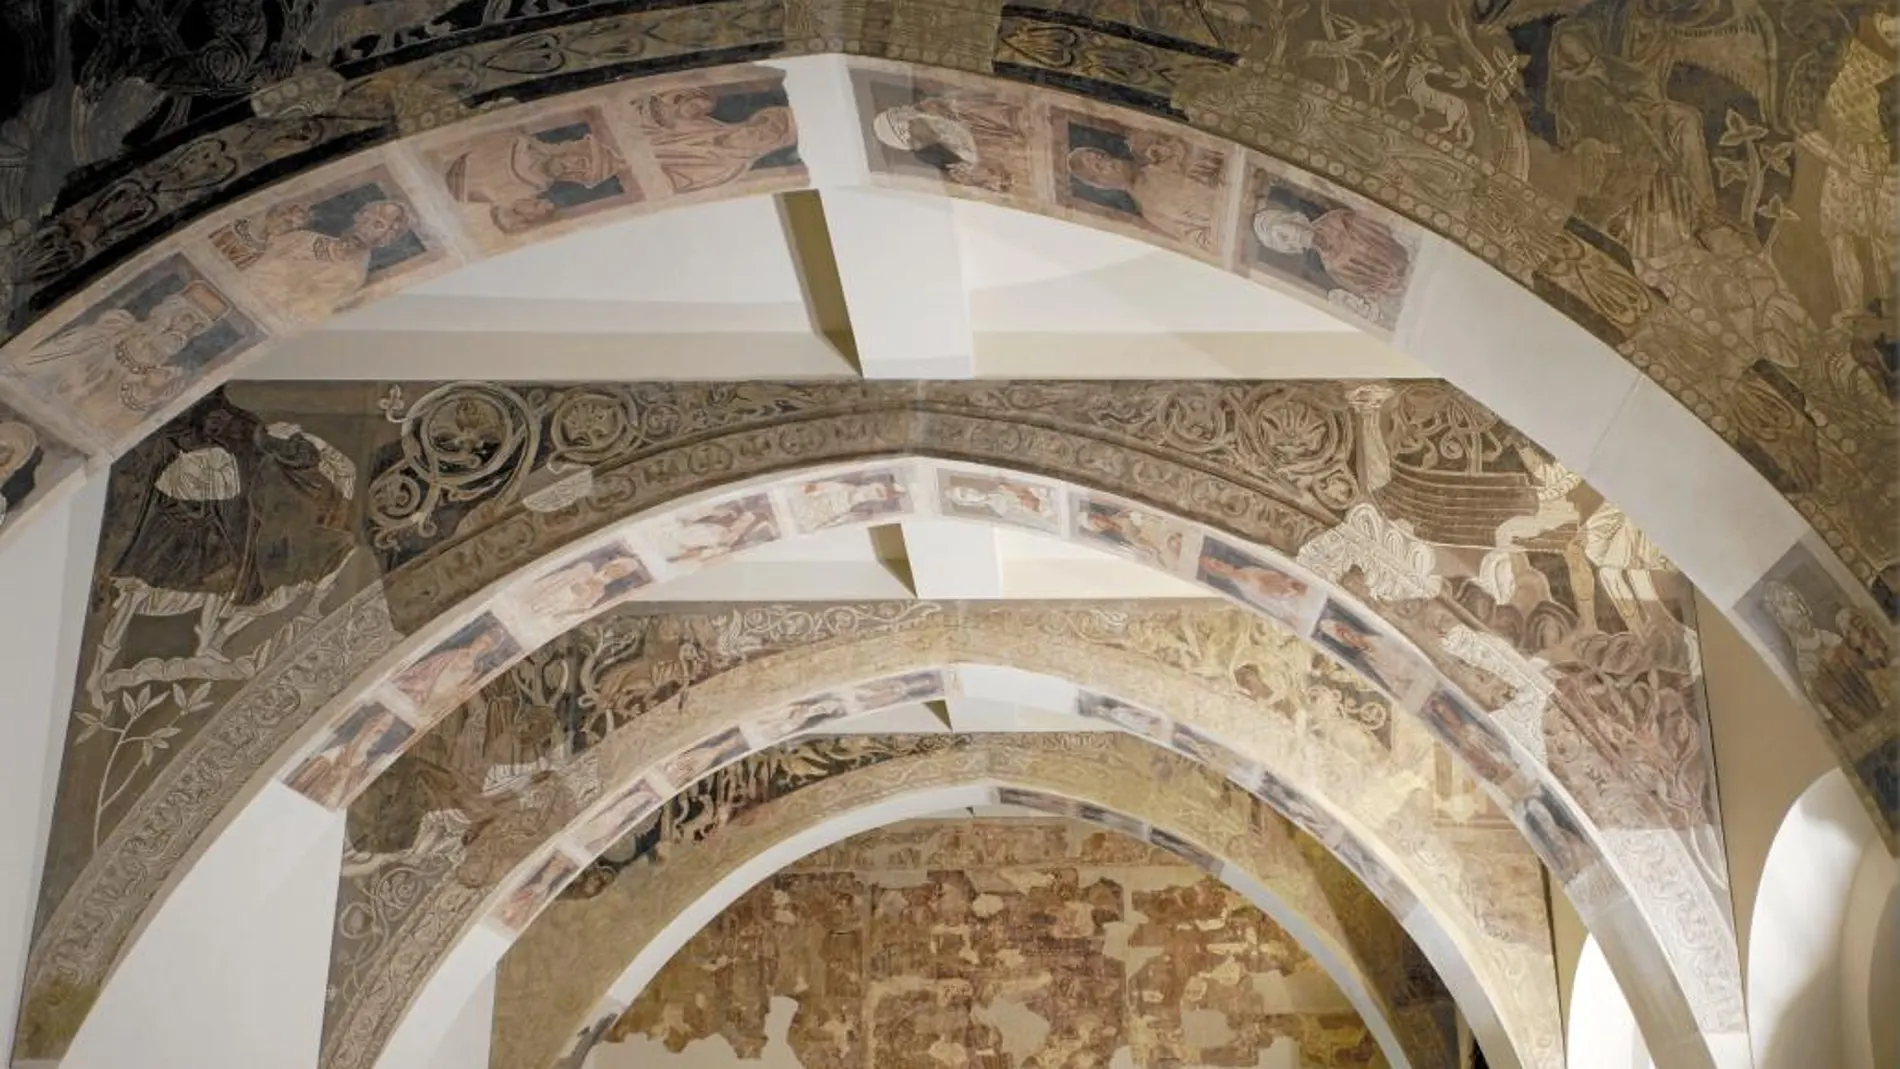 Los murales de Sijena en su actual disposición en el Mnac